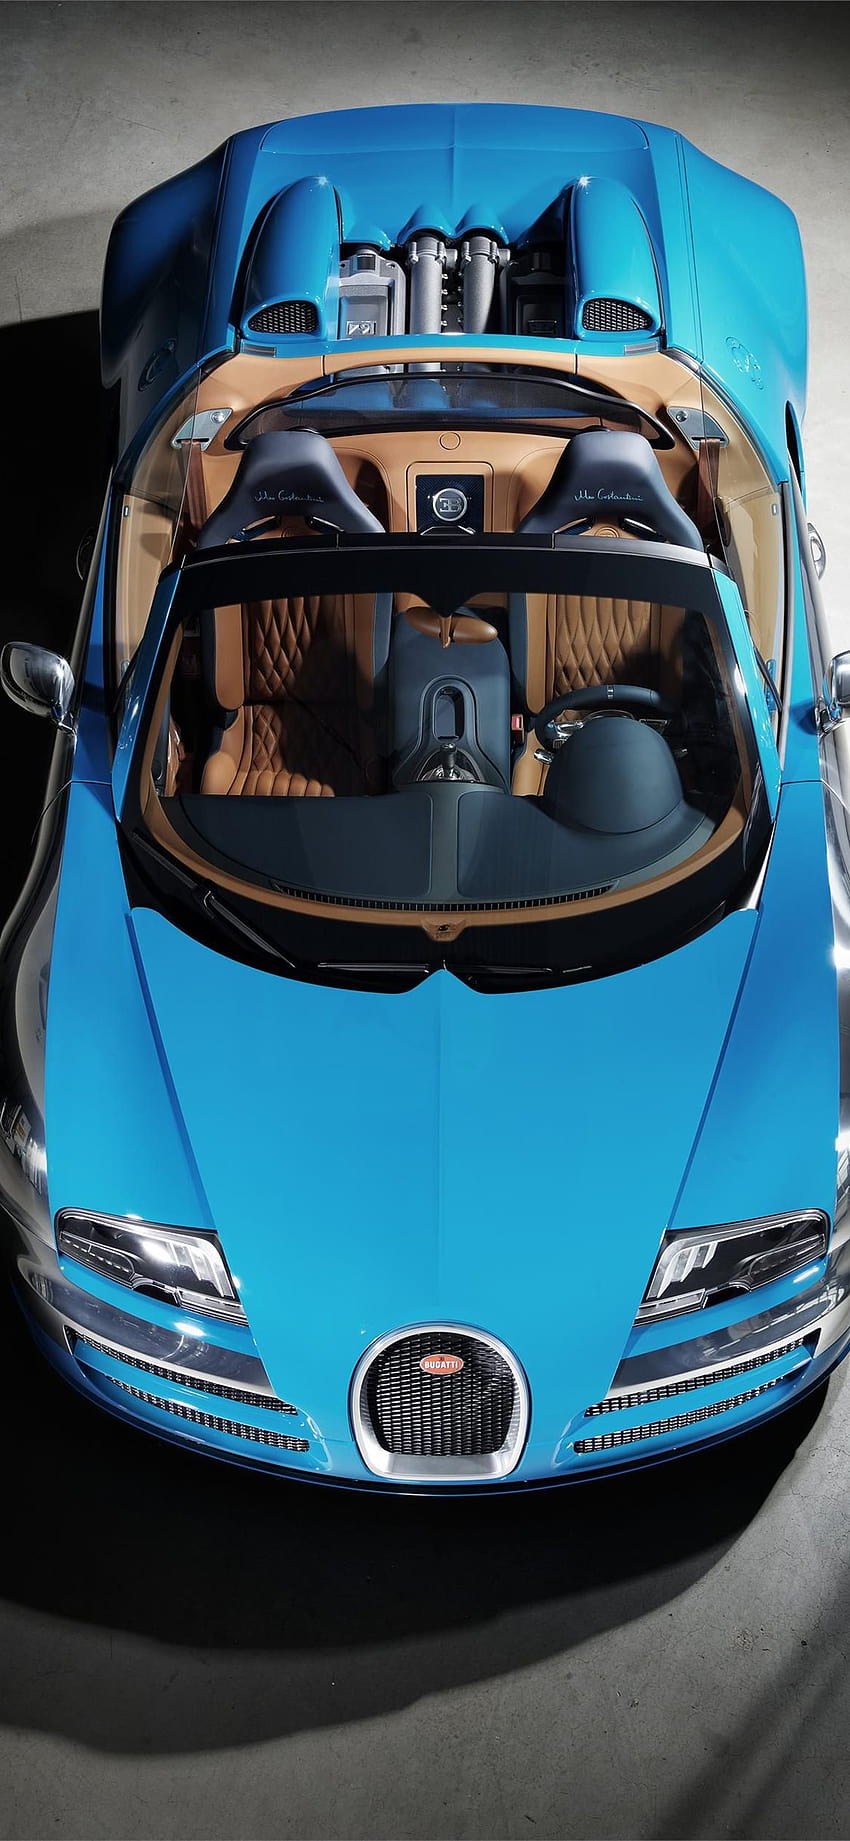 Bugatti Sports Car Wallpaper by SmilingMobile Inc.